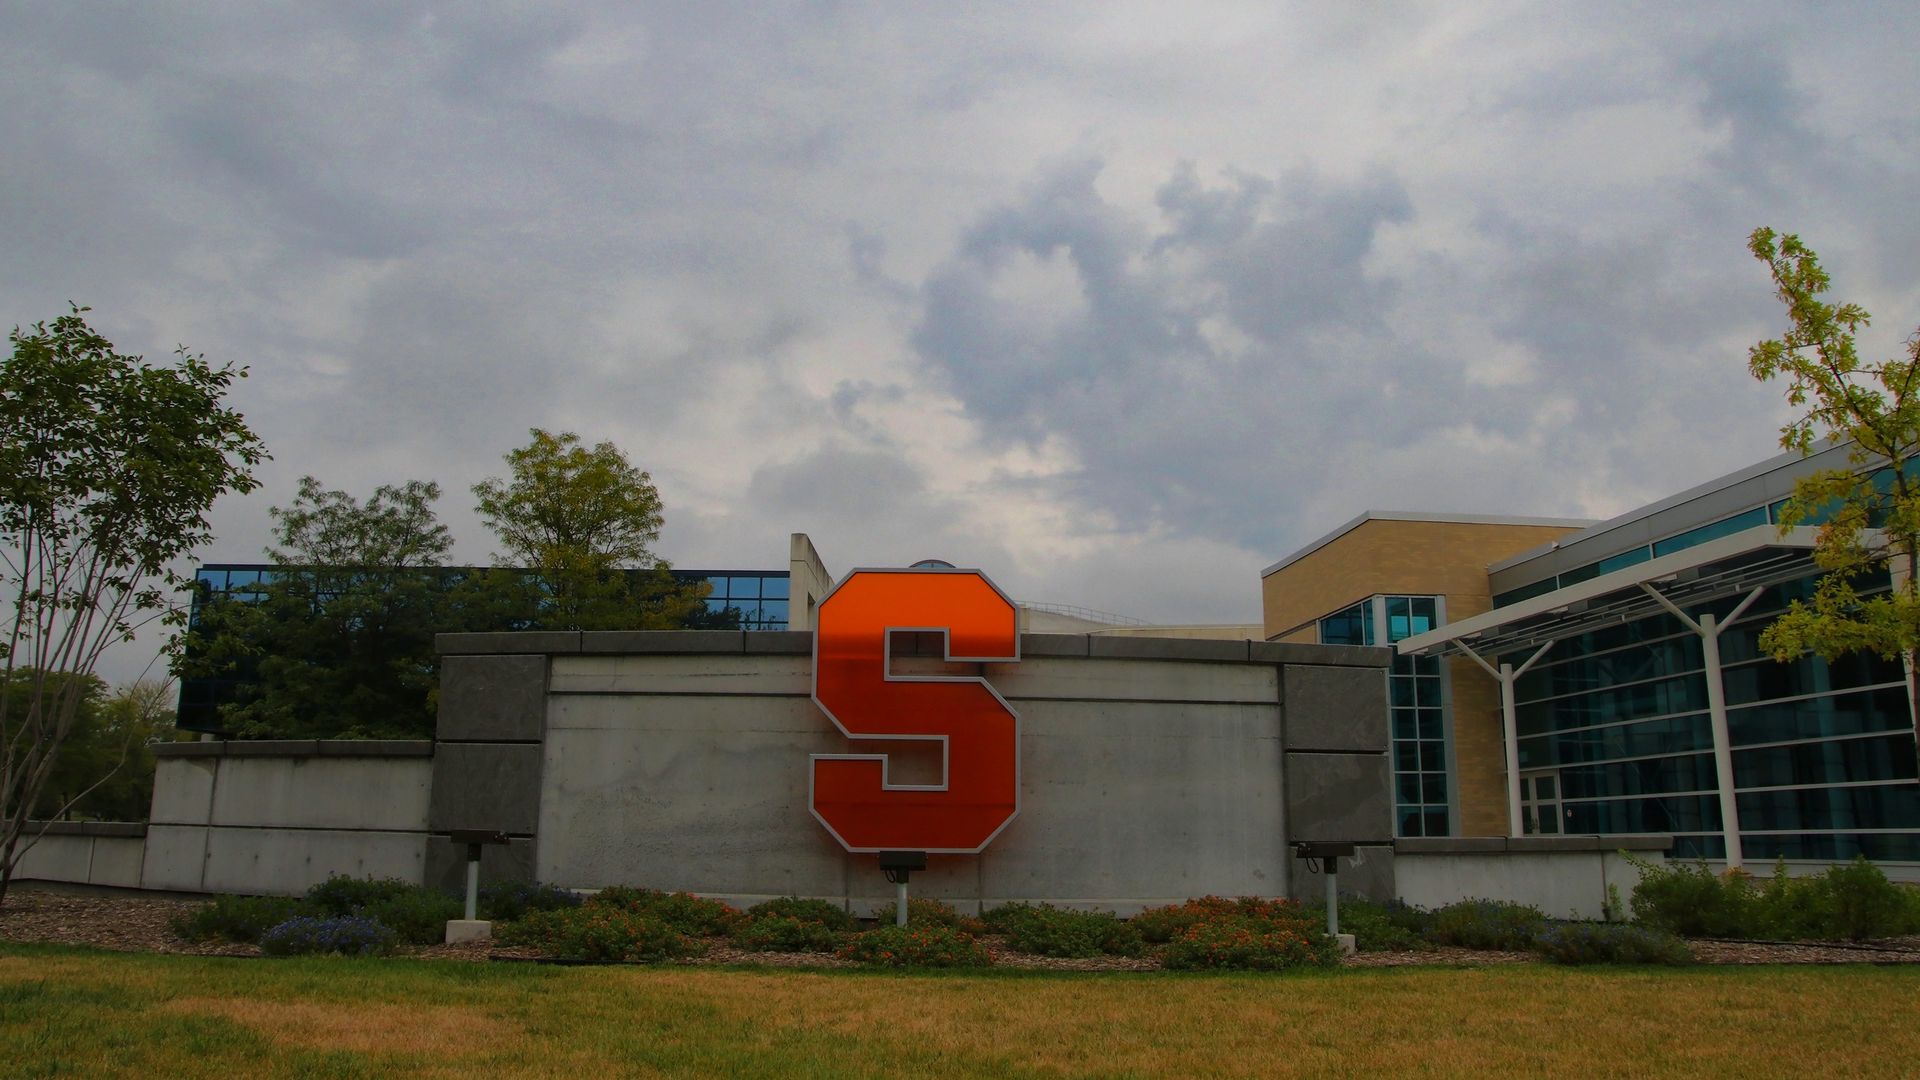  Syracuse University